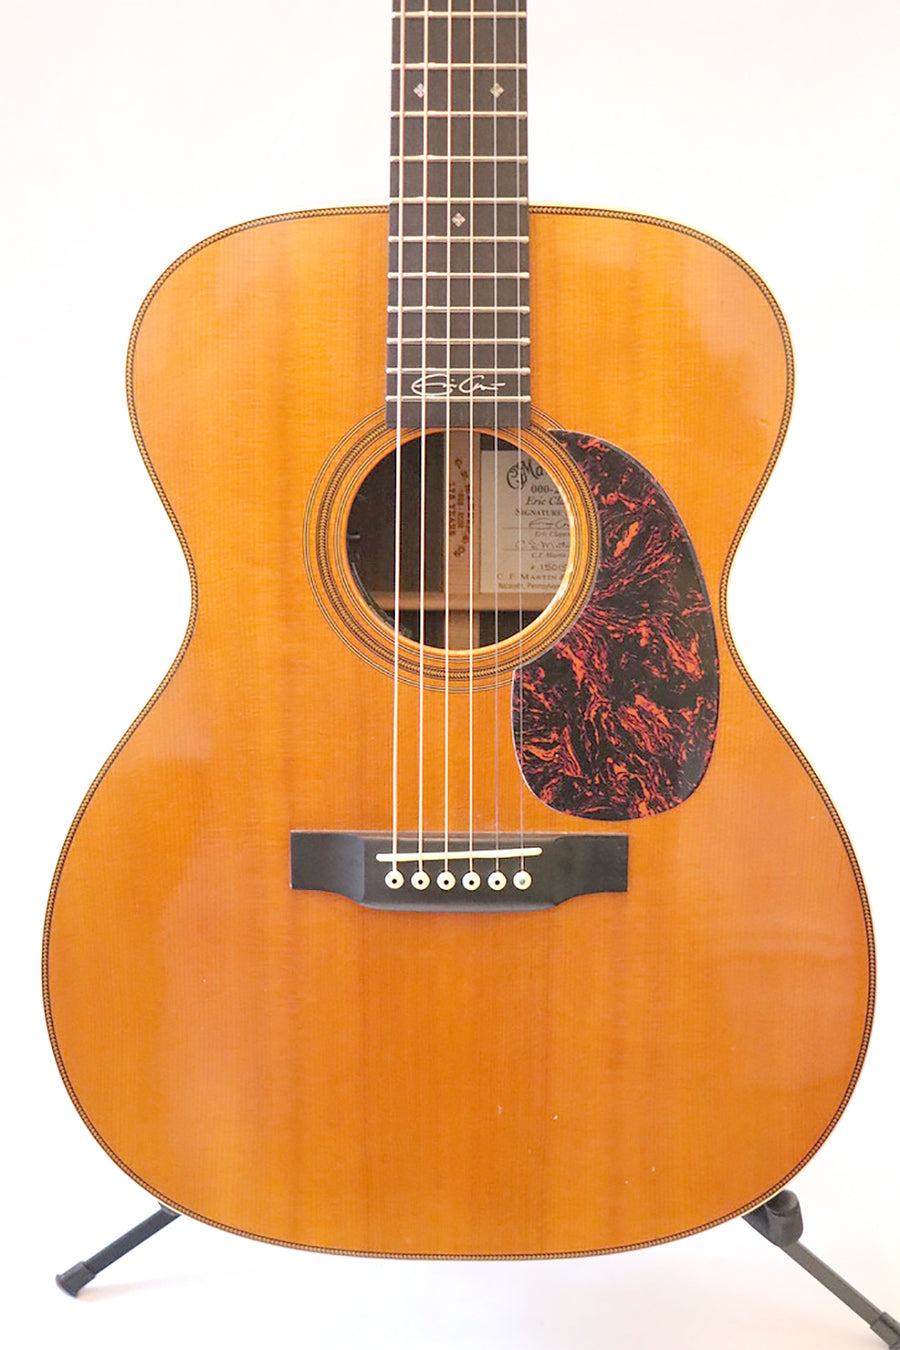 Martin Guitars 000-28EC Eric Clapton Signature